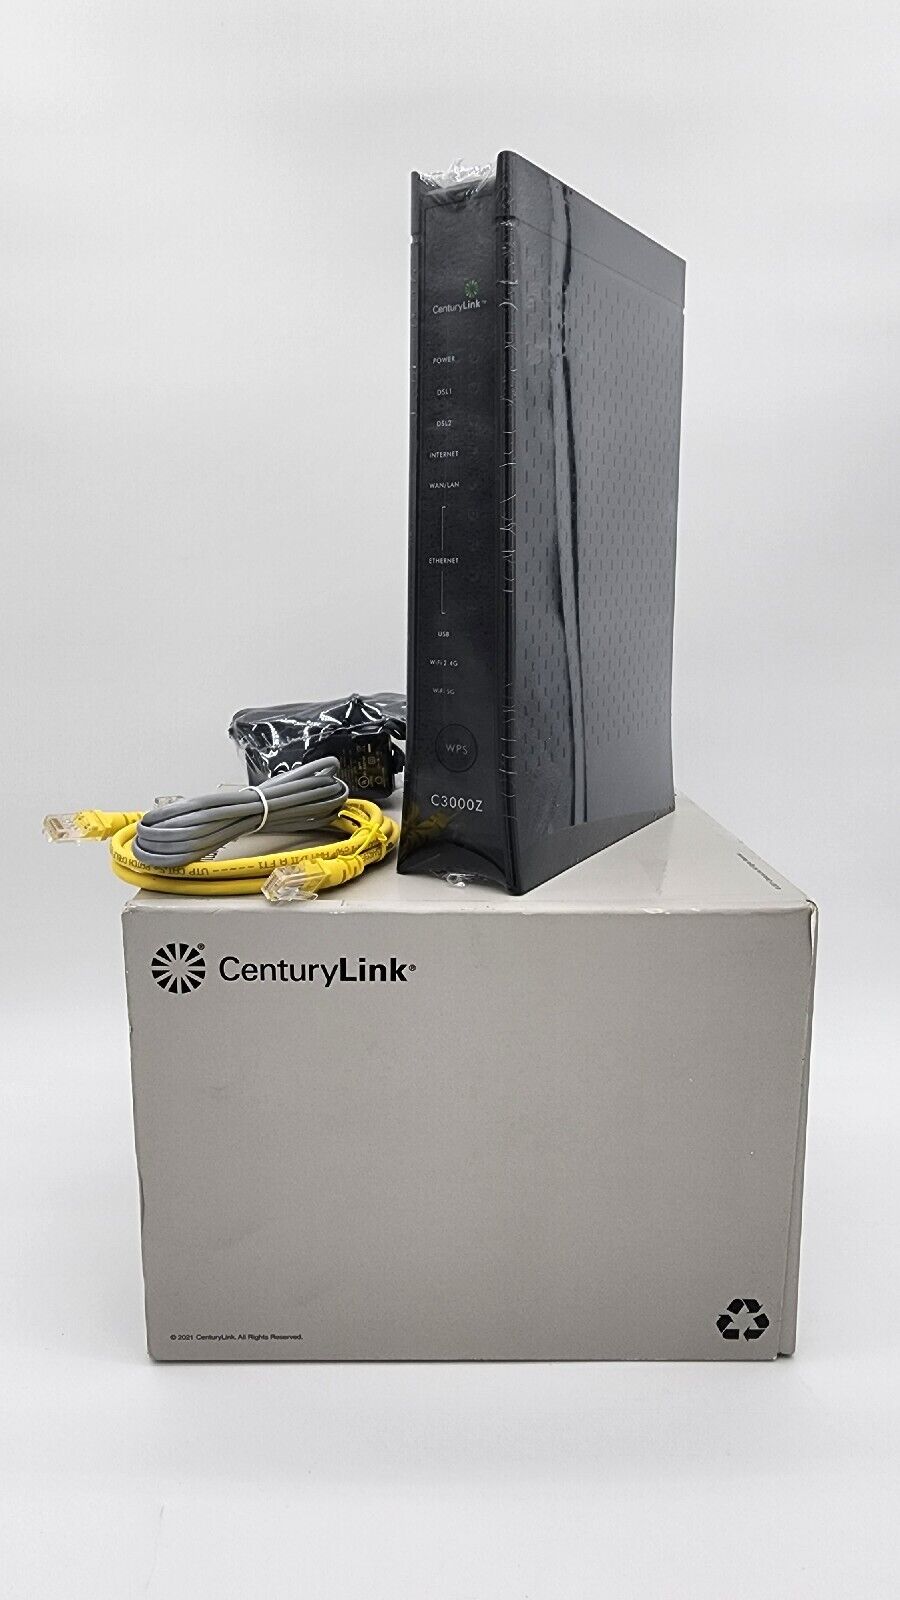 CenturyLink ZYXEL C3000Z Modem Wireless Router w/Cables 1W00030#3